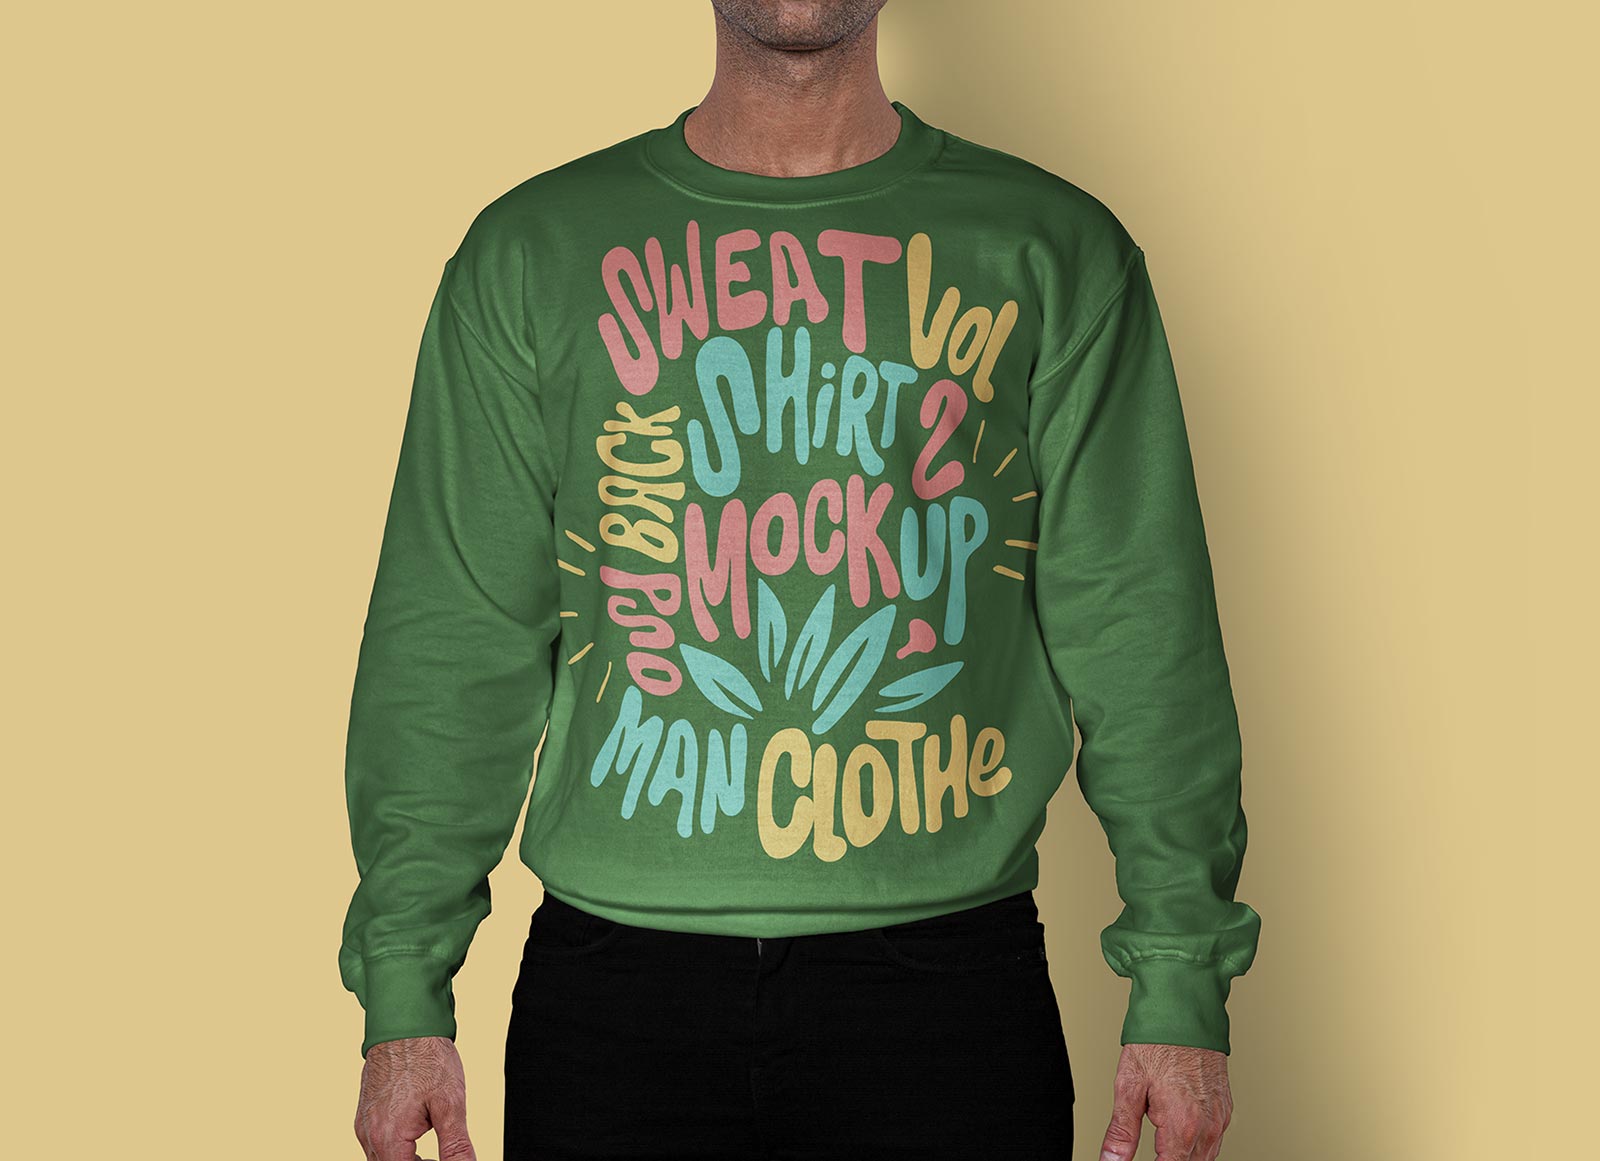 Free-Full-Sleeves-Men's-Sweatshirt-Mockup-PSD